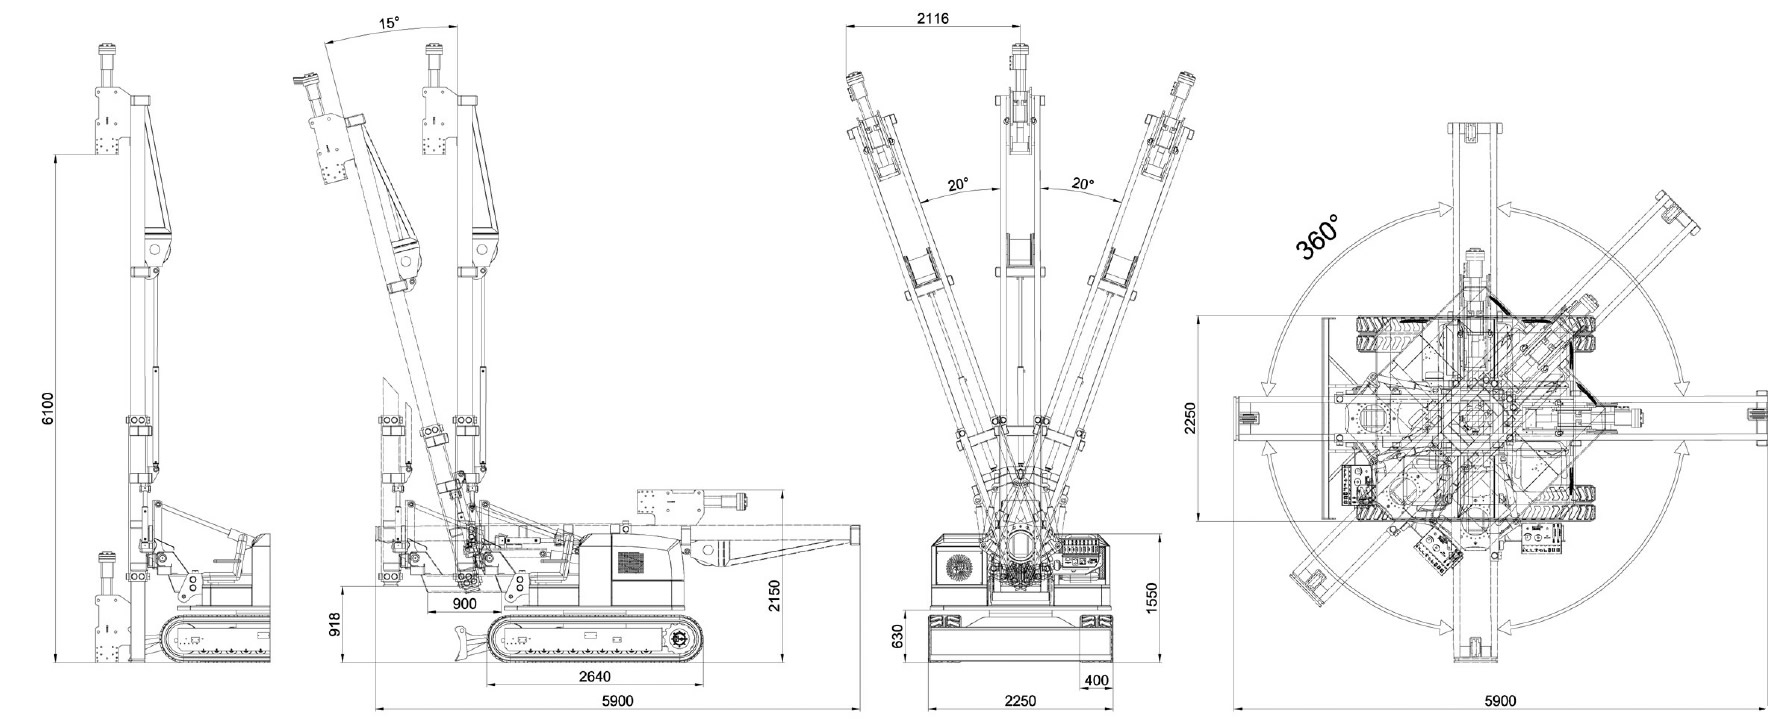 Misure e disegno tecnico battipalo modello 1200